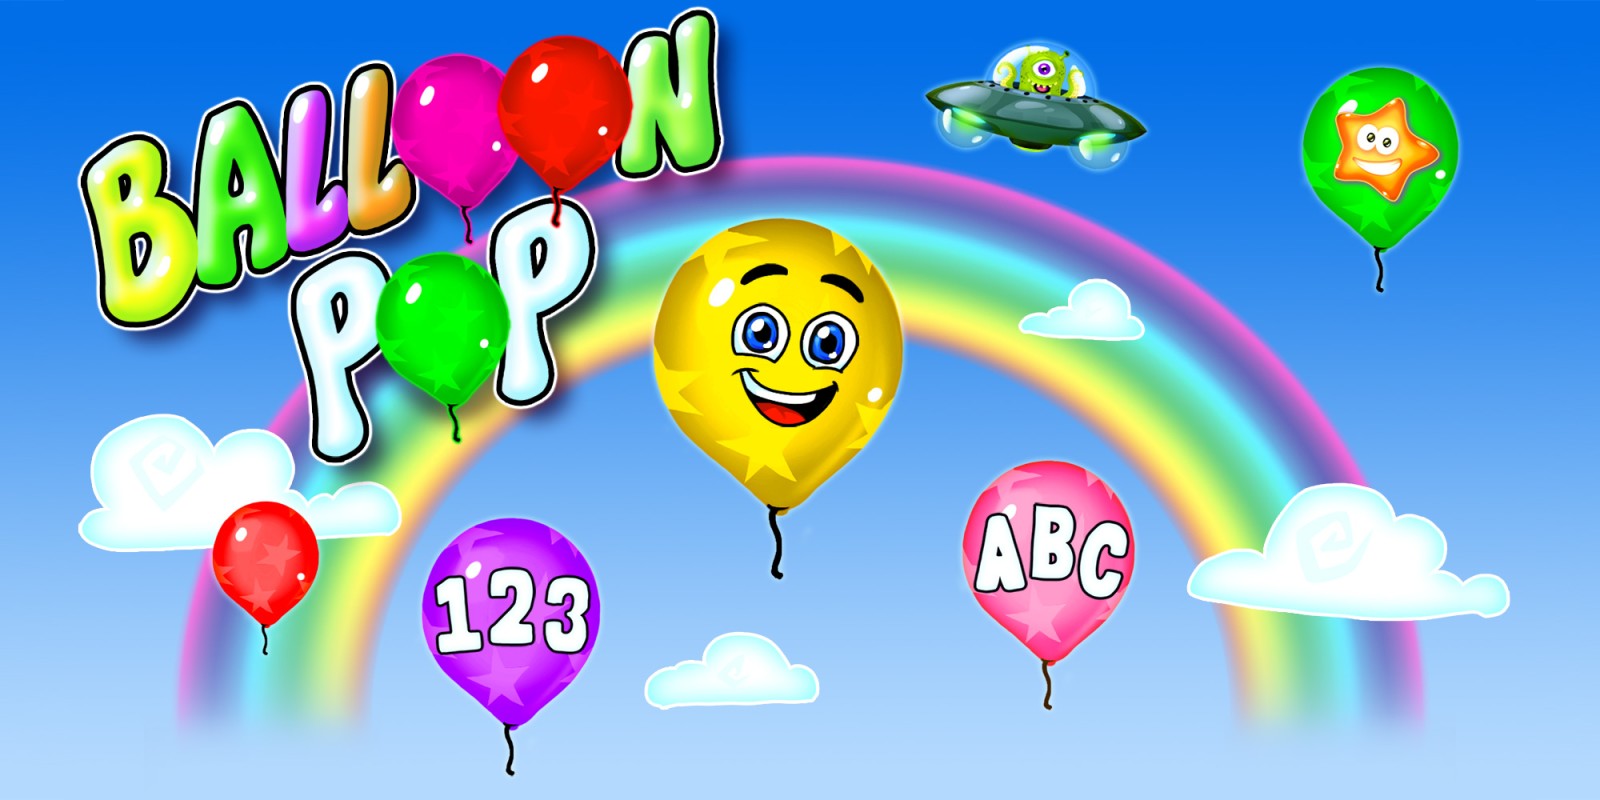 Balloon Pop - i migliori giochi di apprendimento per bambini e bambini piccoli - numeri, lettere, forme, colori - 14 lingue